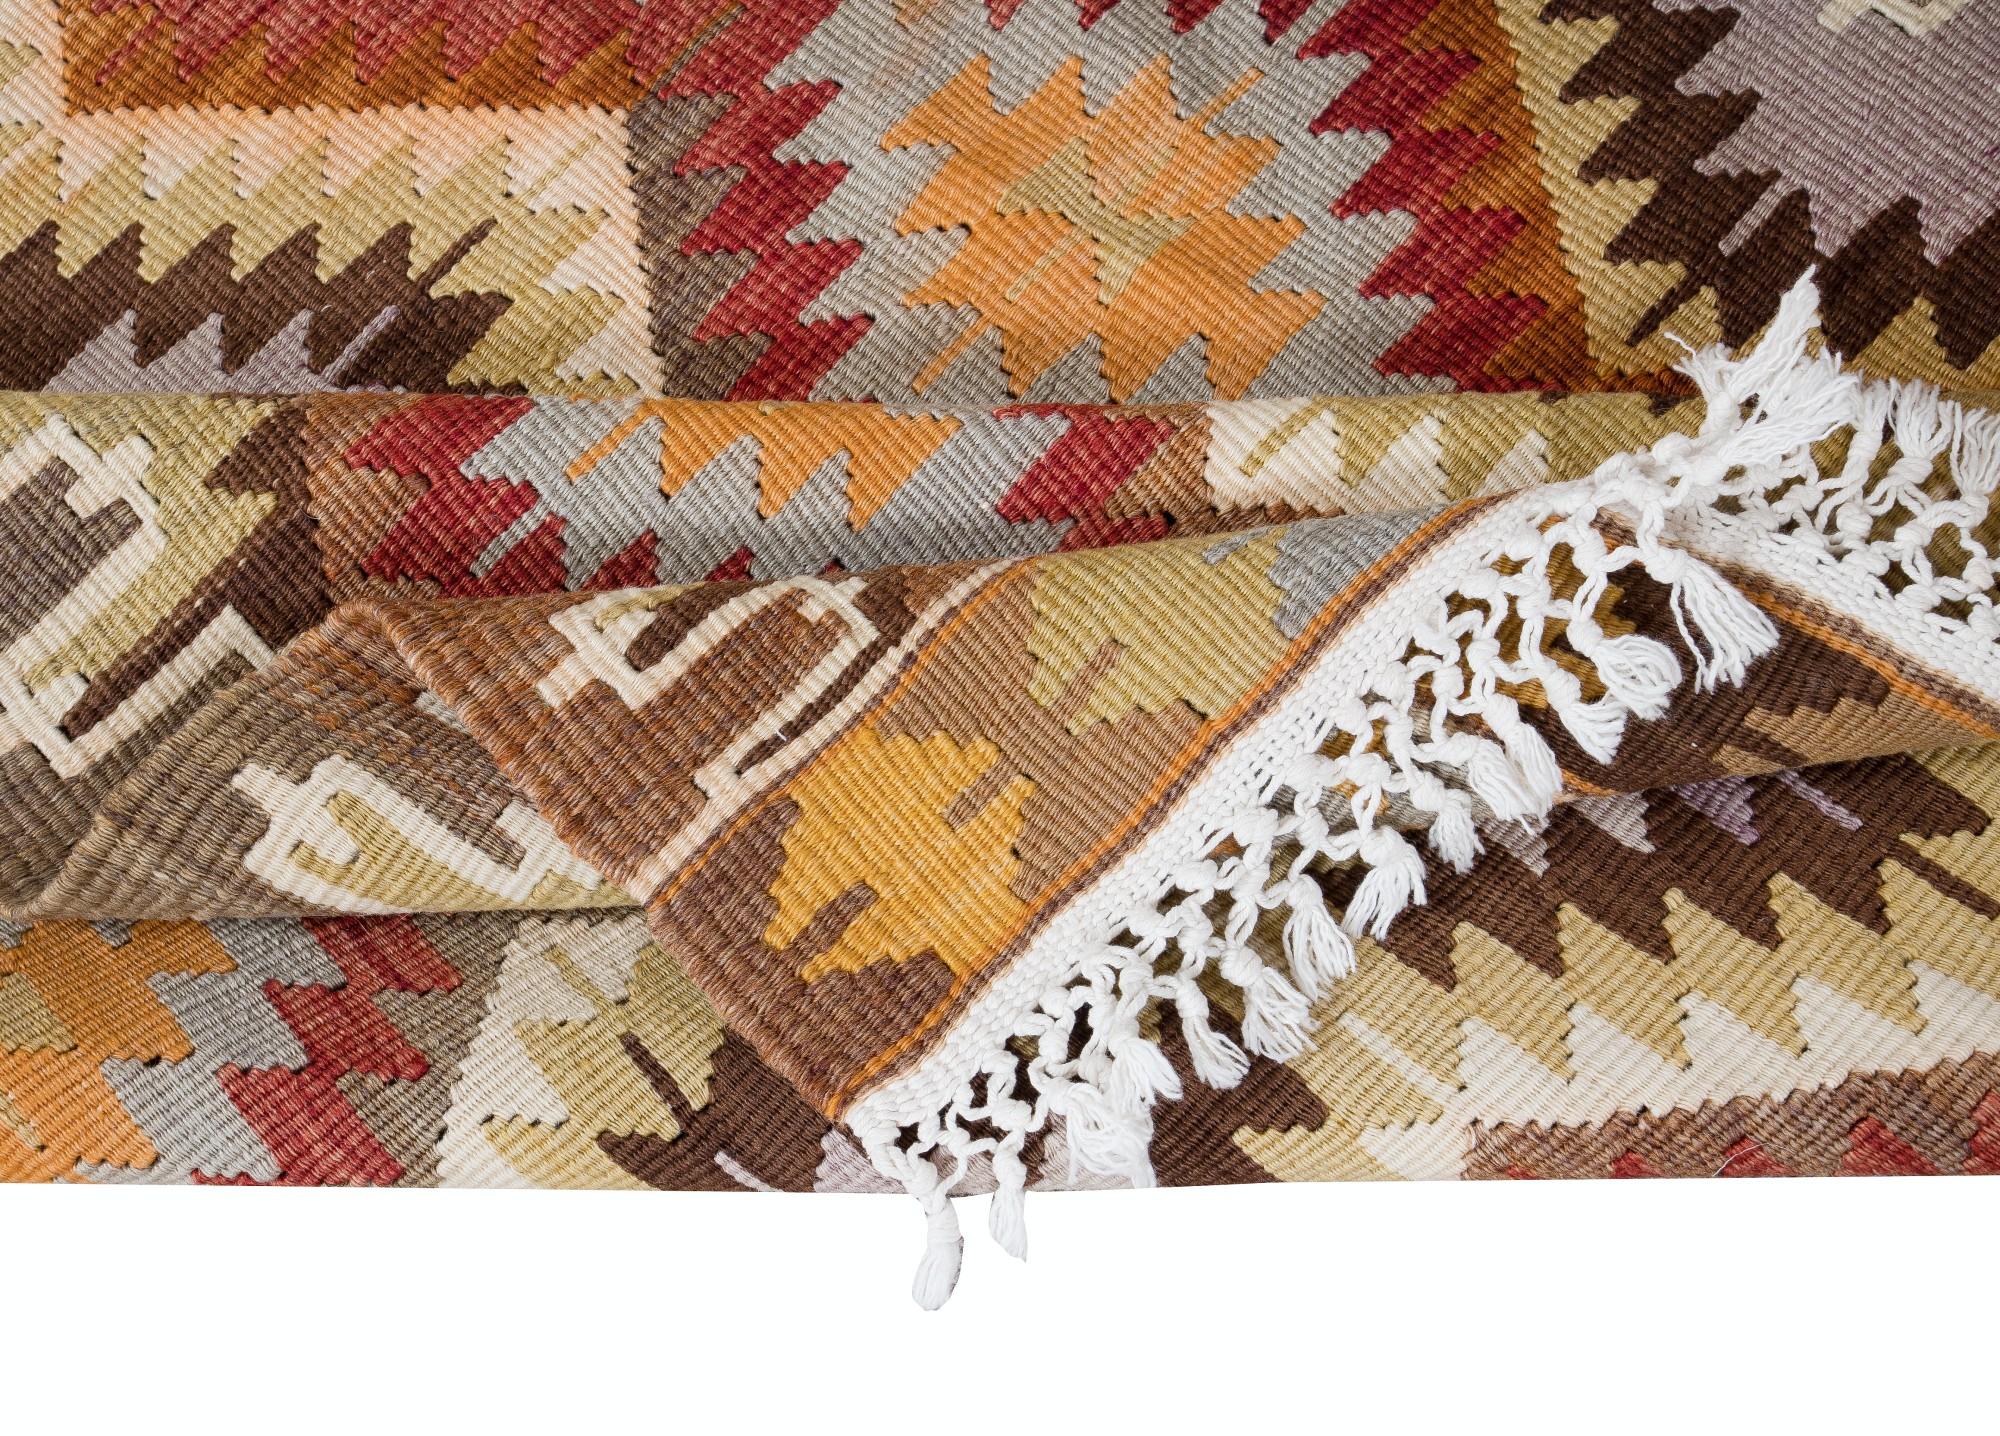 Embarquez pour un voyage à travers la tradition turque avec cet exquis tapis kilim vintage en laine turque tissé à la main, qui témoigne du savoir-faire durable des artisans d'Anatolie. Tissé avec un soin méticuleux et une attention particulière aux